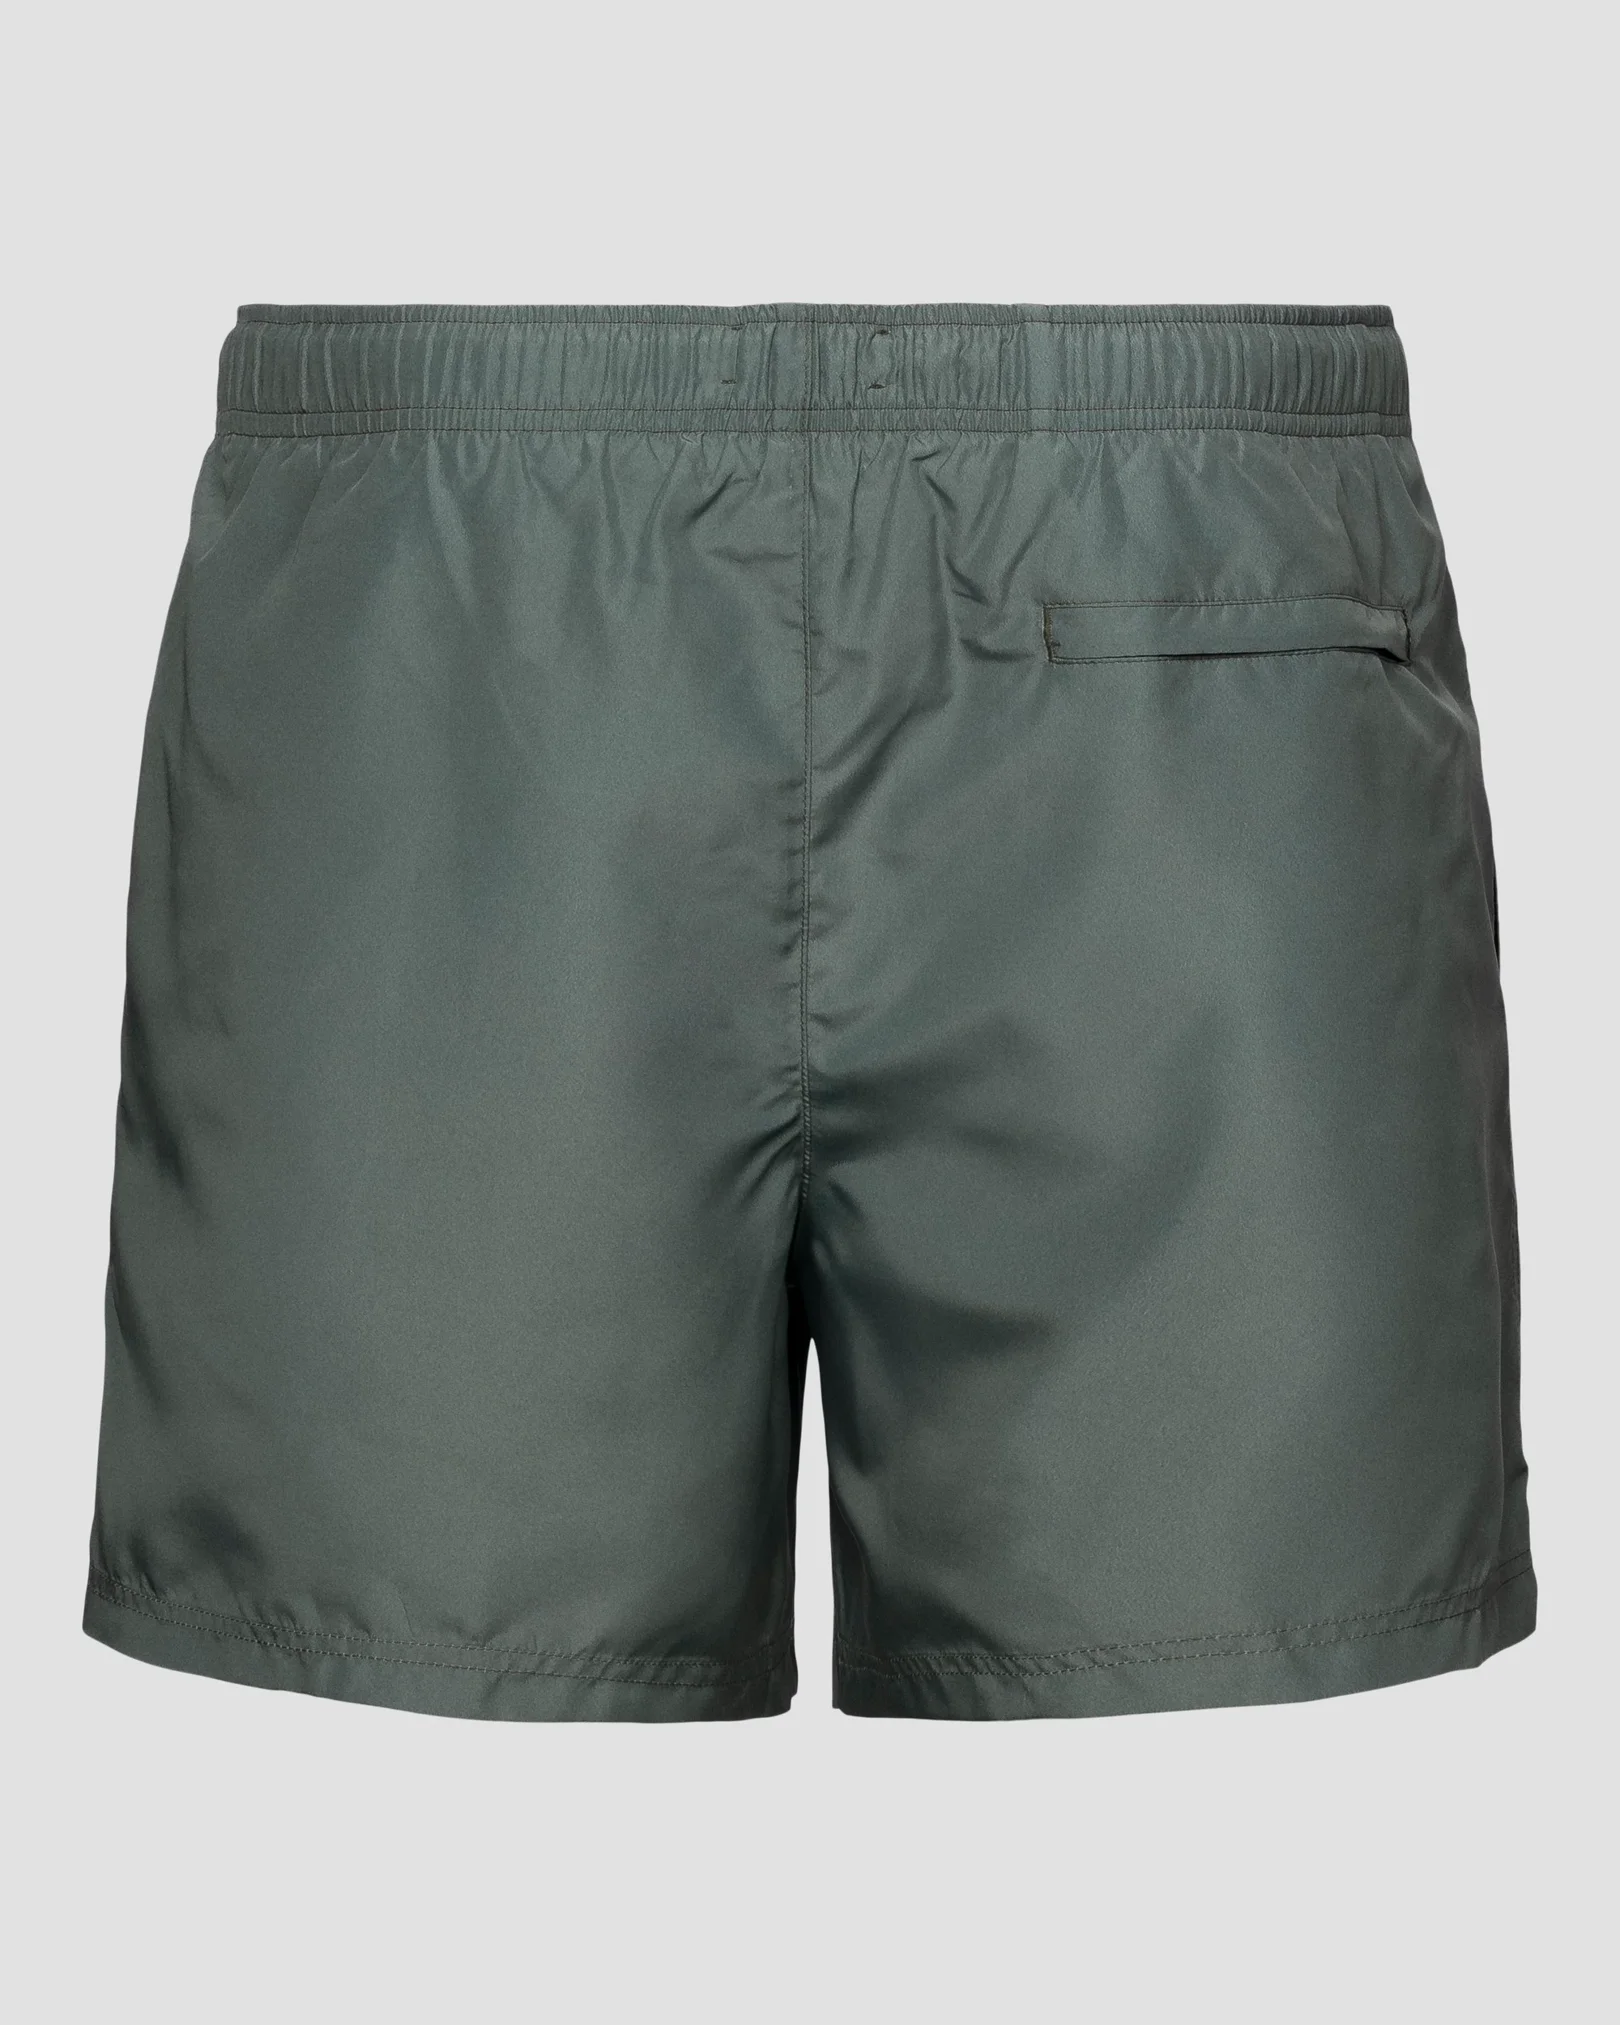 Eton - mid green drawstring swim shorts